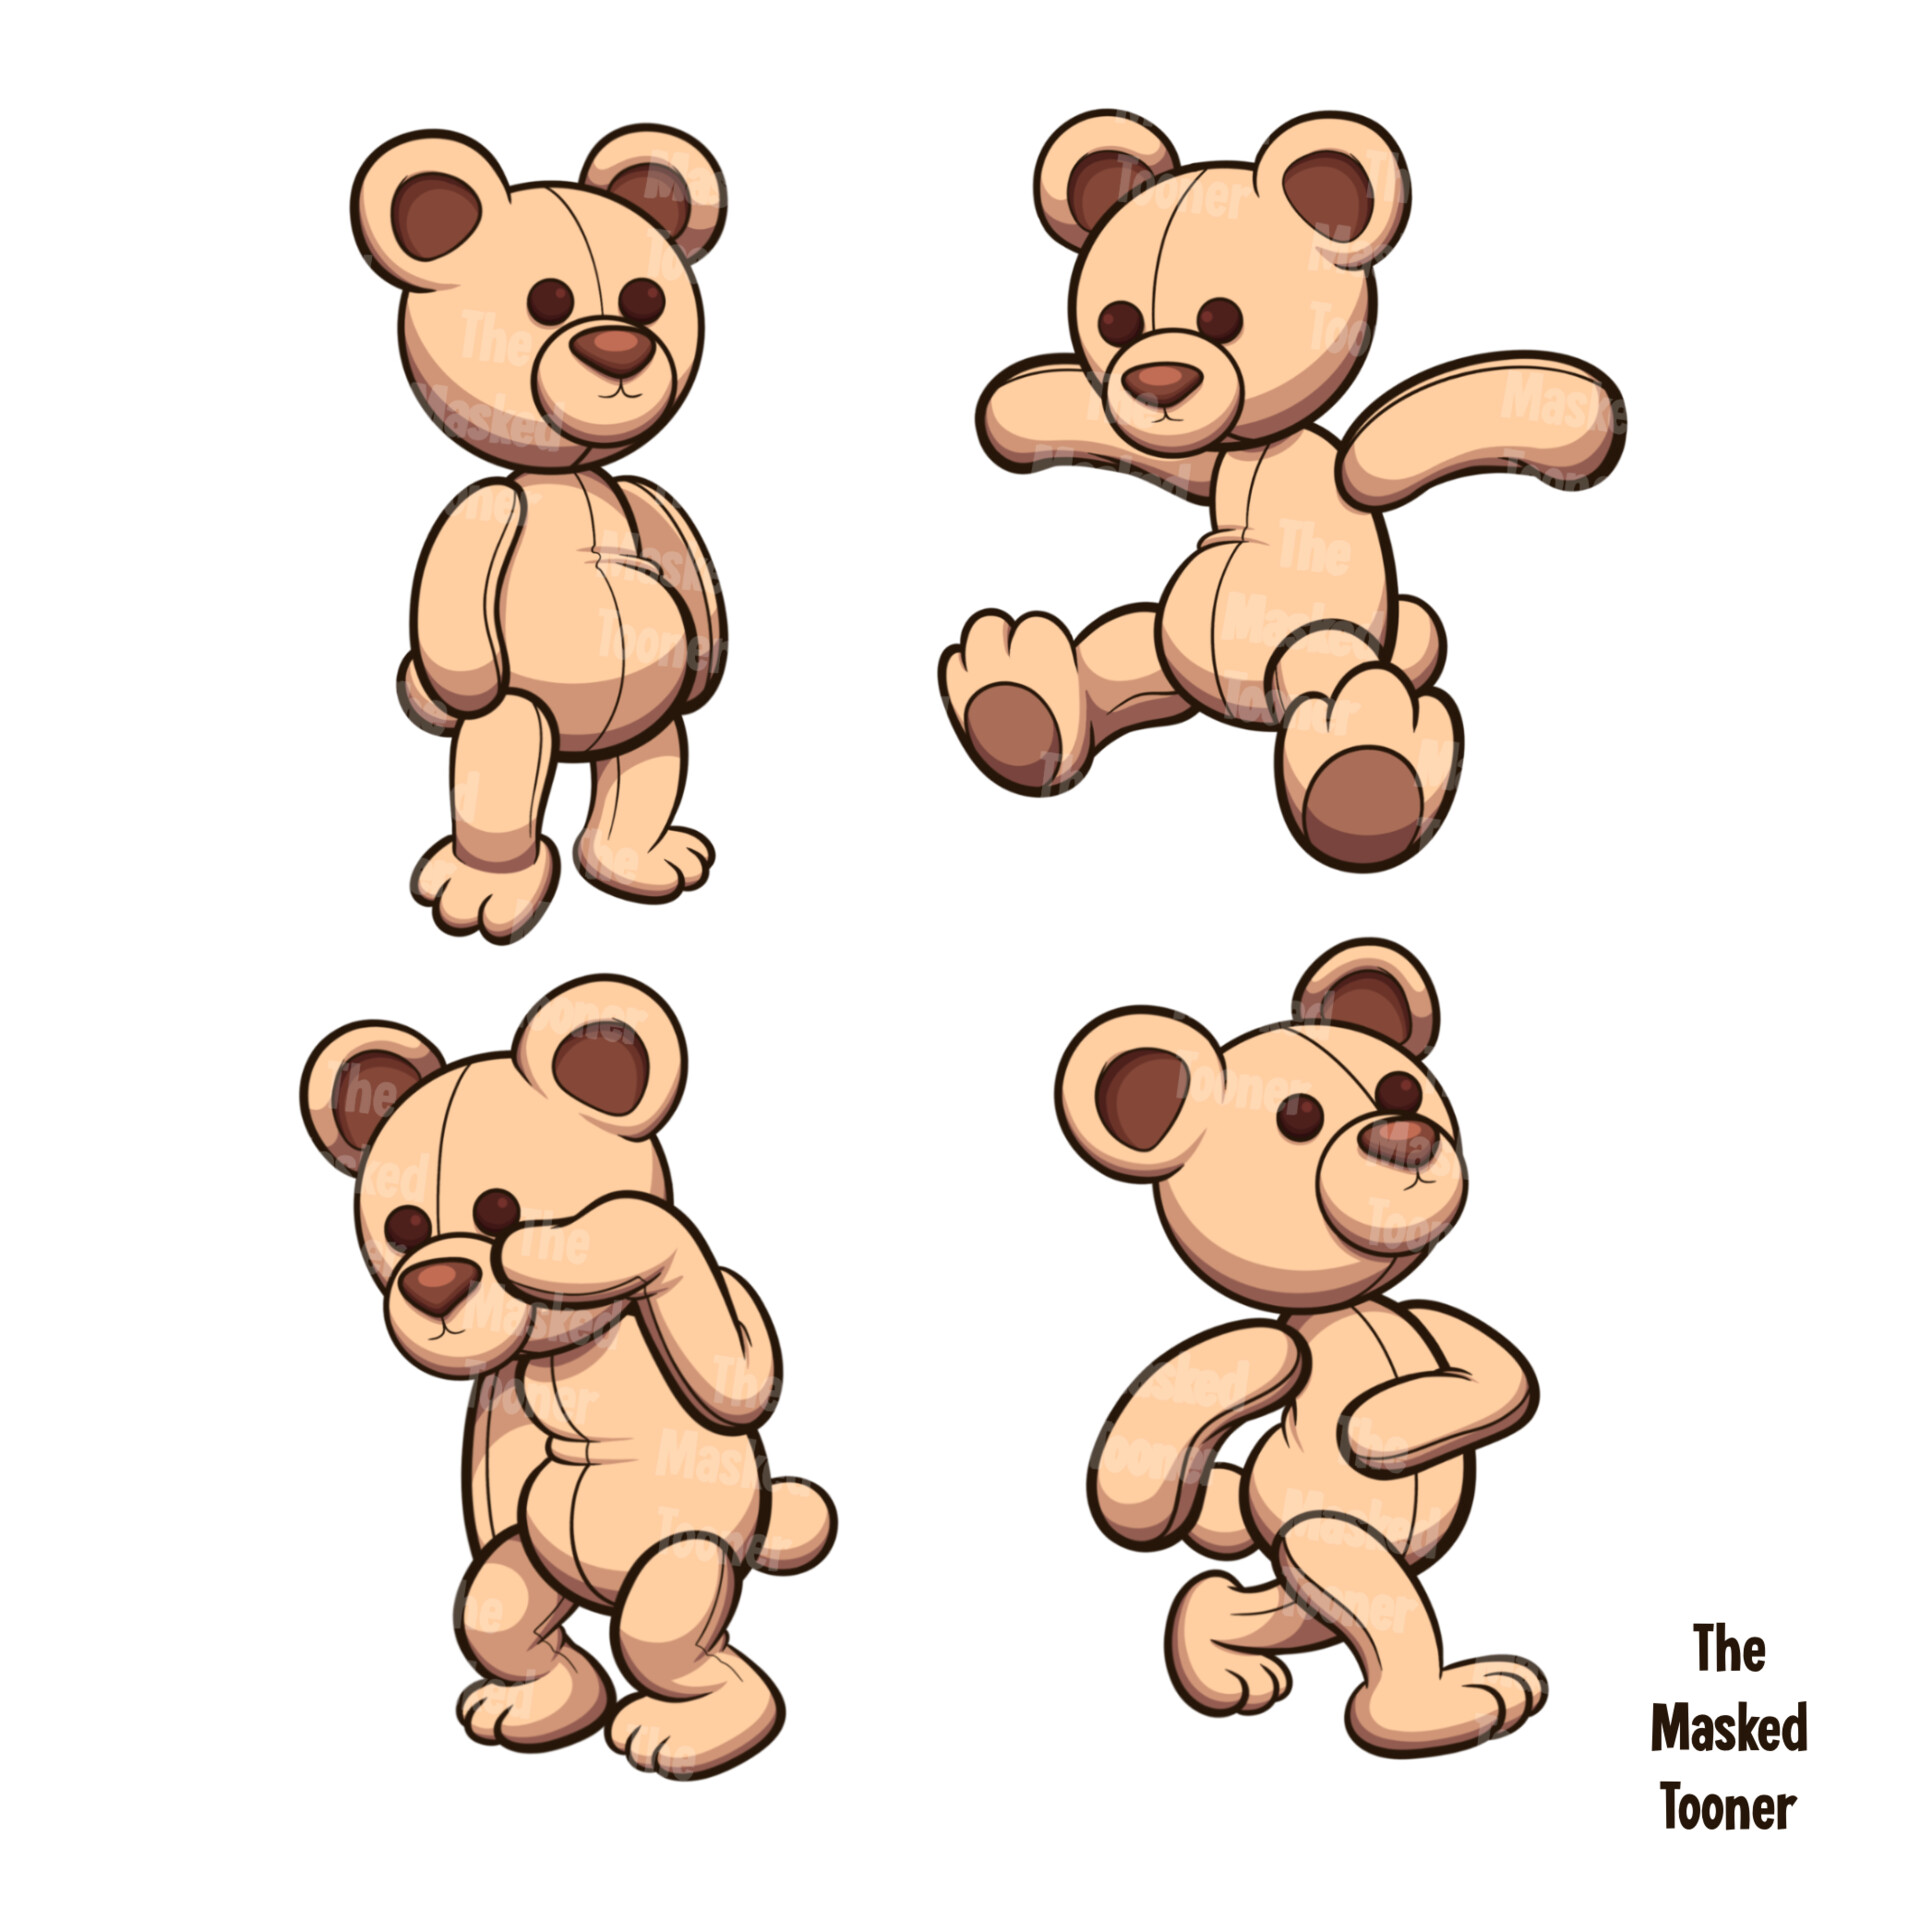 ArtStation - Crazy bear. 2D platform game